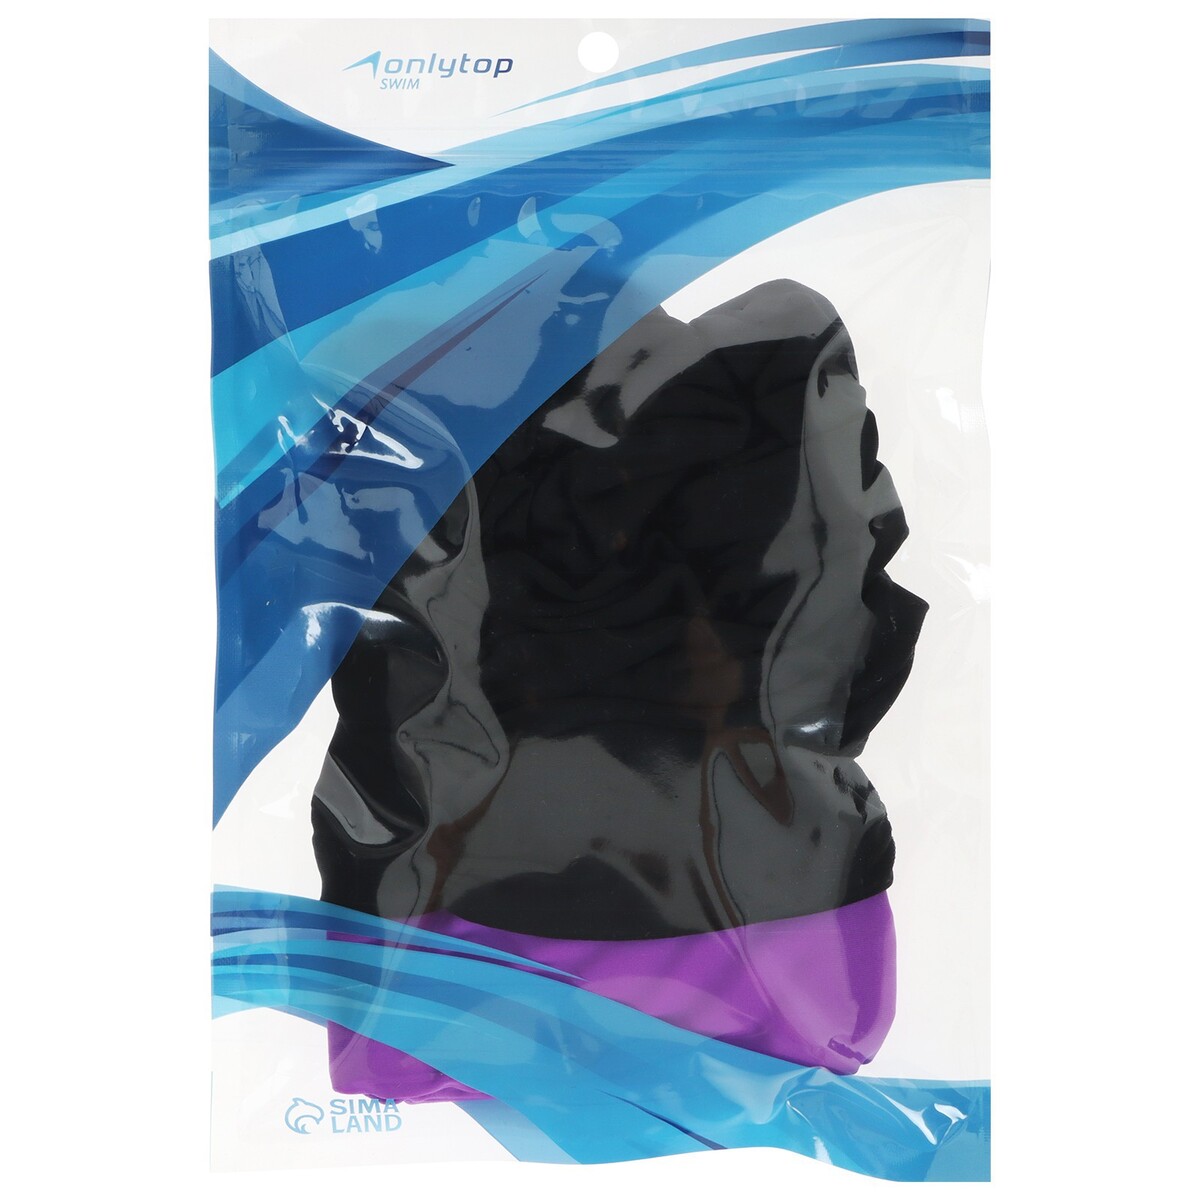 фото Шапочка для плавания взрослая onlytop, тканевая, обхват 54-60 см, цвет черный/фиолетовый